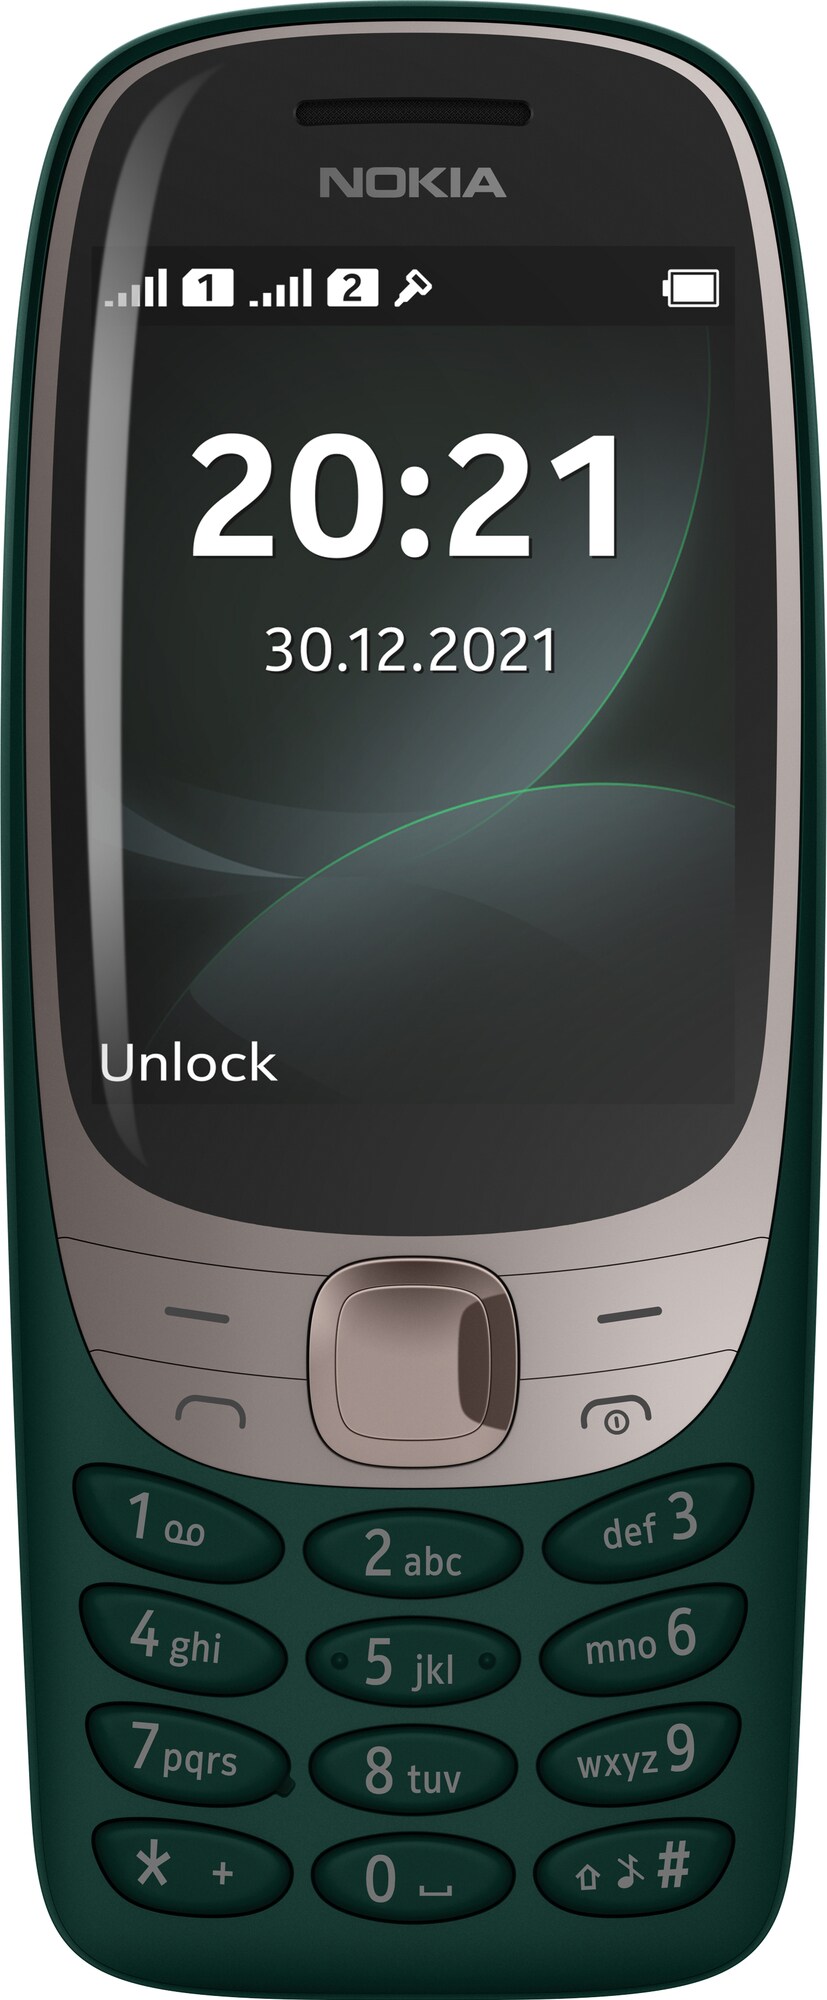 Nokia 6310 matkapuhelin (tummanvihreä) - Gigantti verkkokauppa